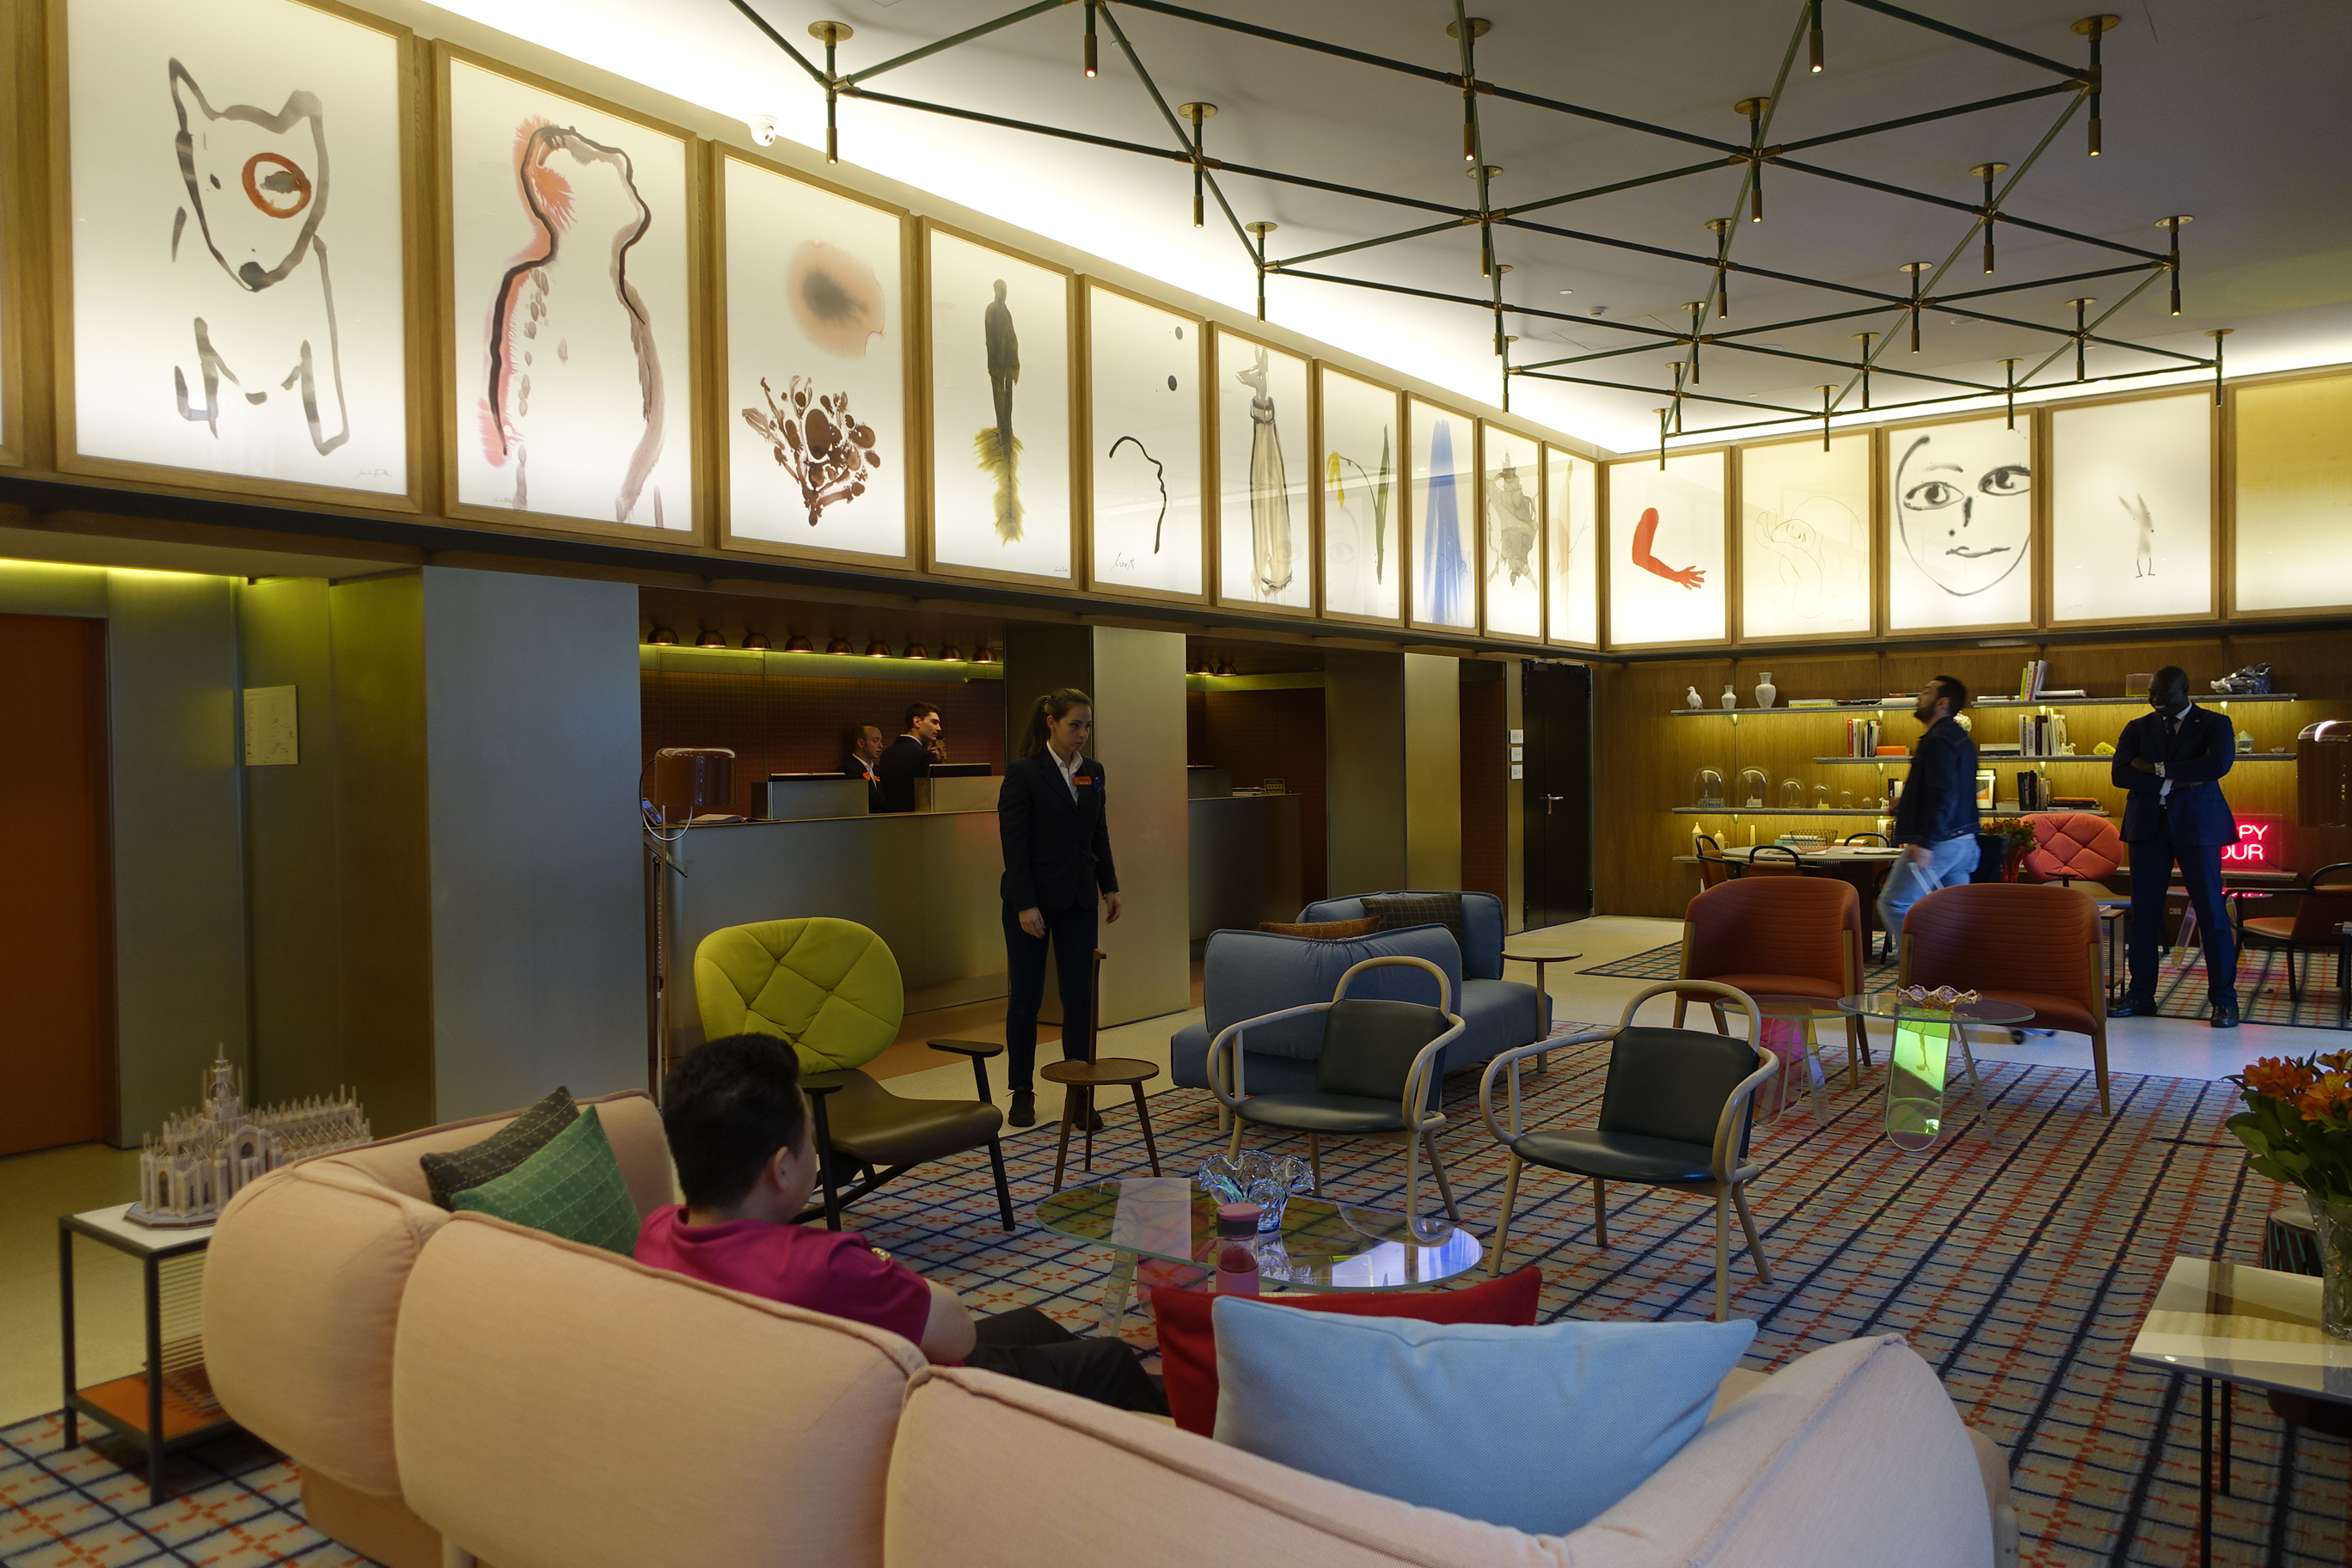 世界のデザインホテルに学ぶ 壁紙使いの上級テクニック Risora Air 理想の暮らし 理想の空間を考えるメディア ダイキン工業株式会社